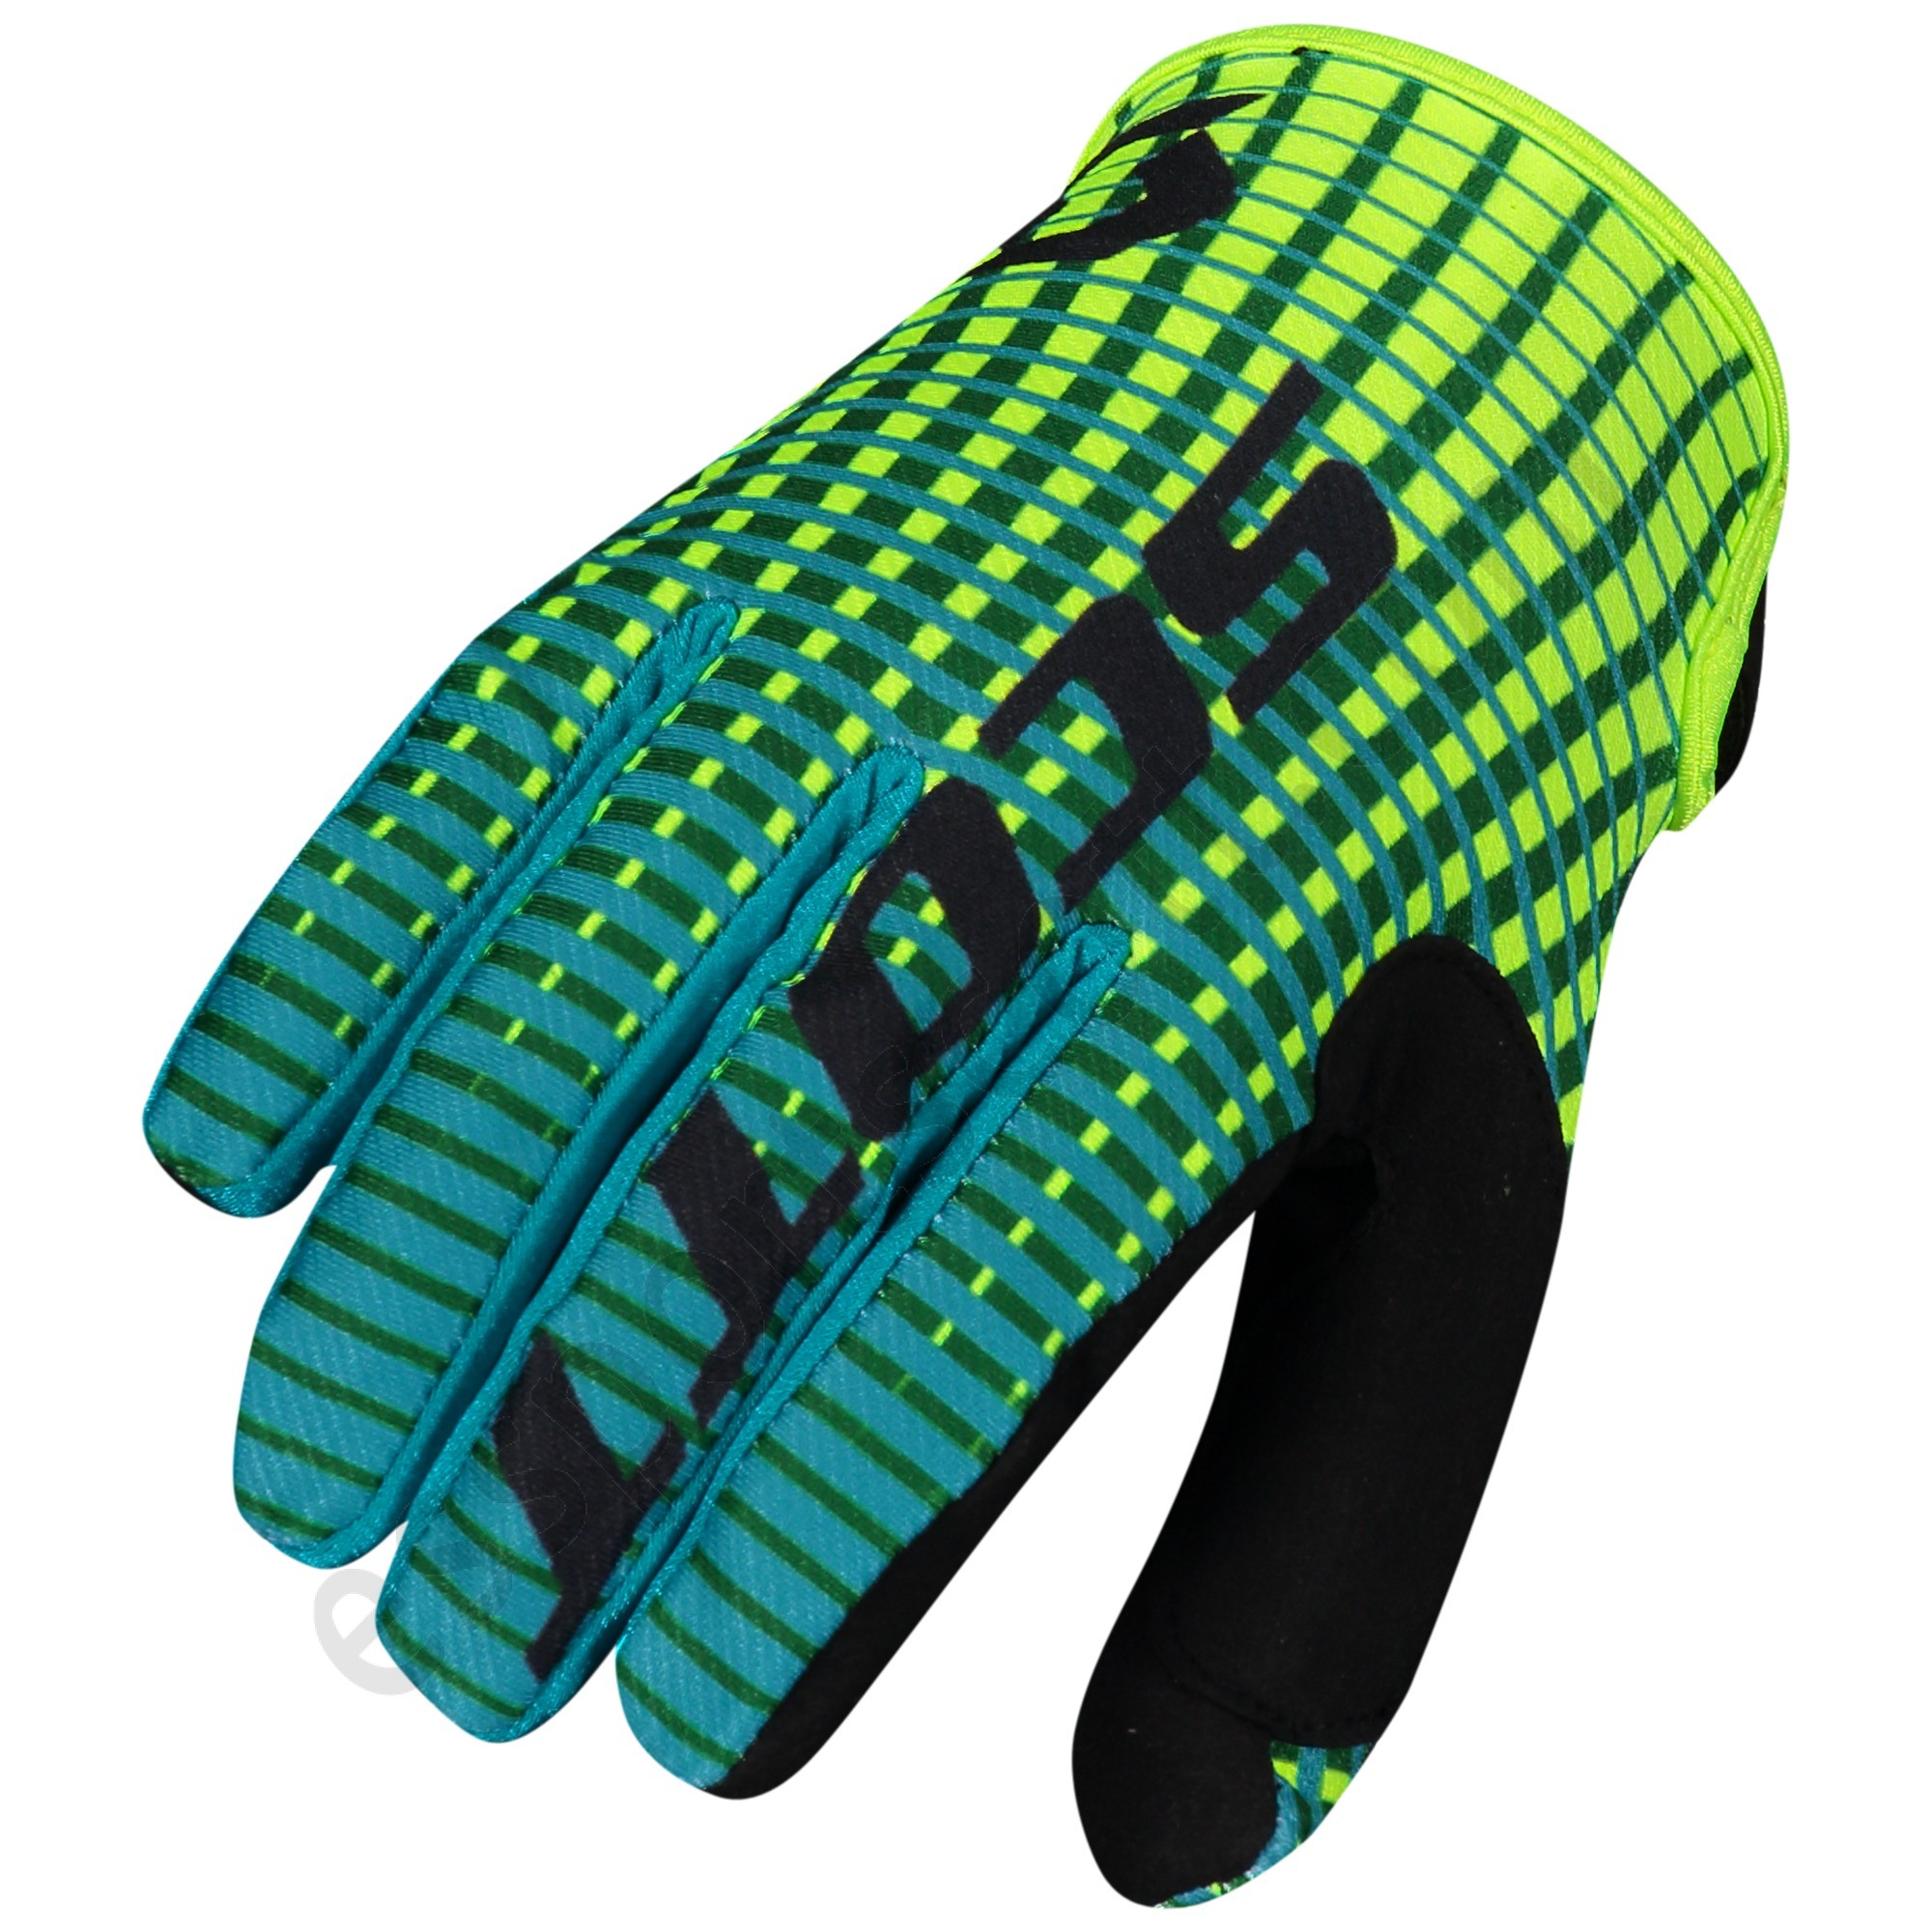 Scott Tienda ◇ 350 Fury Glove - Scott Tienda ◇ 350 Fury Glove